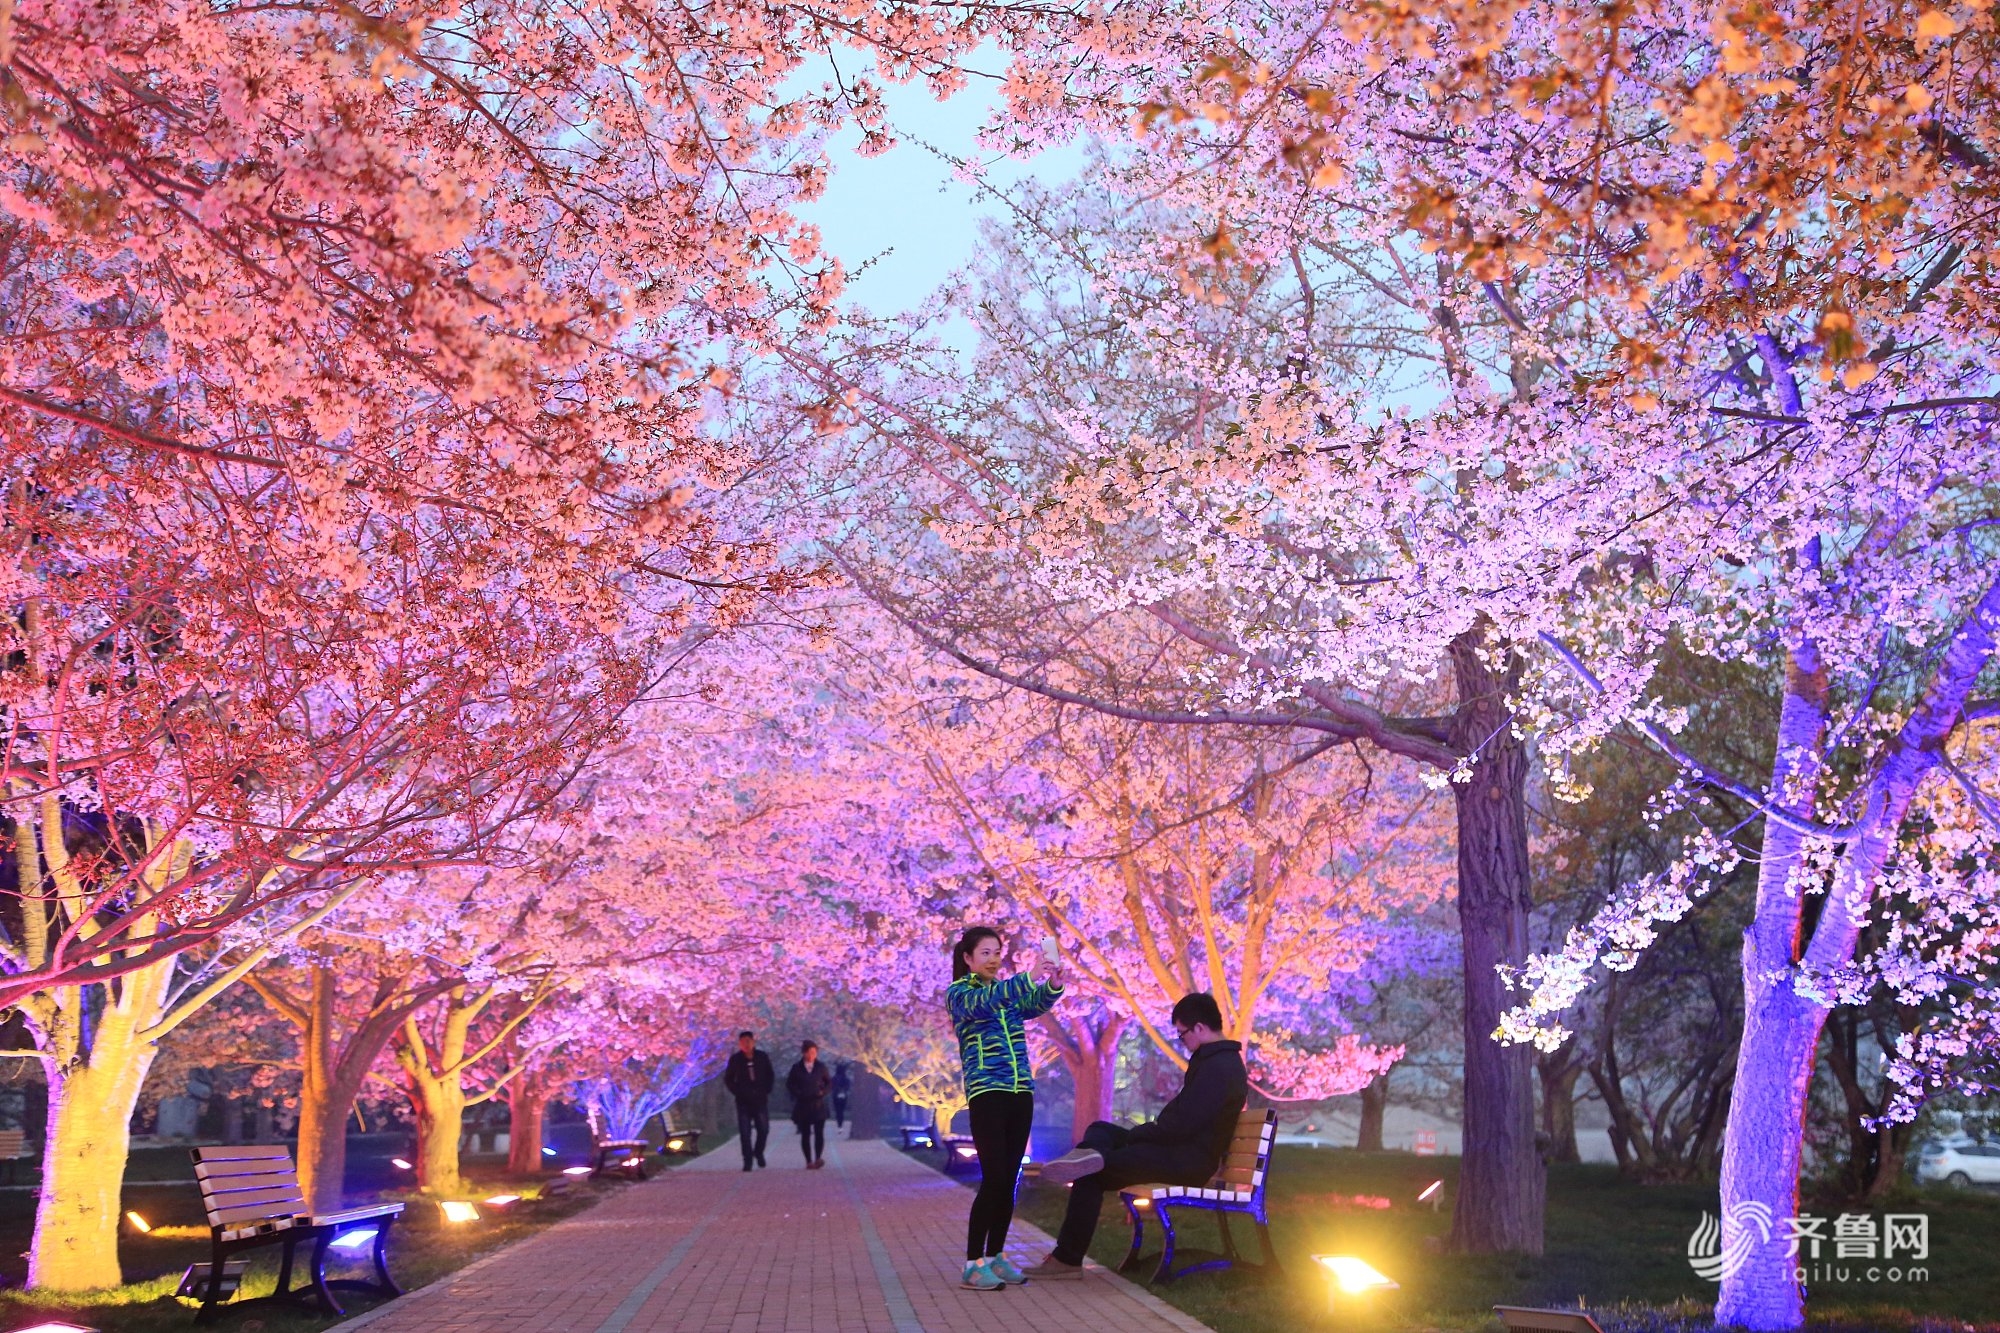 辽宁 旅顺203樱花园每年4月20日至5月10日左右,是樱花盛开的时节